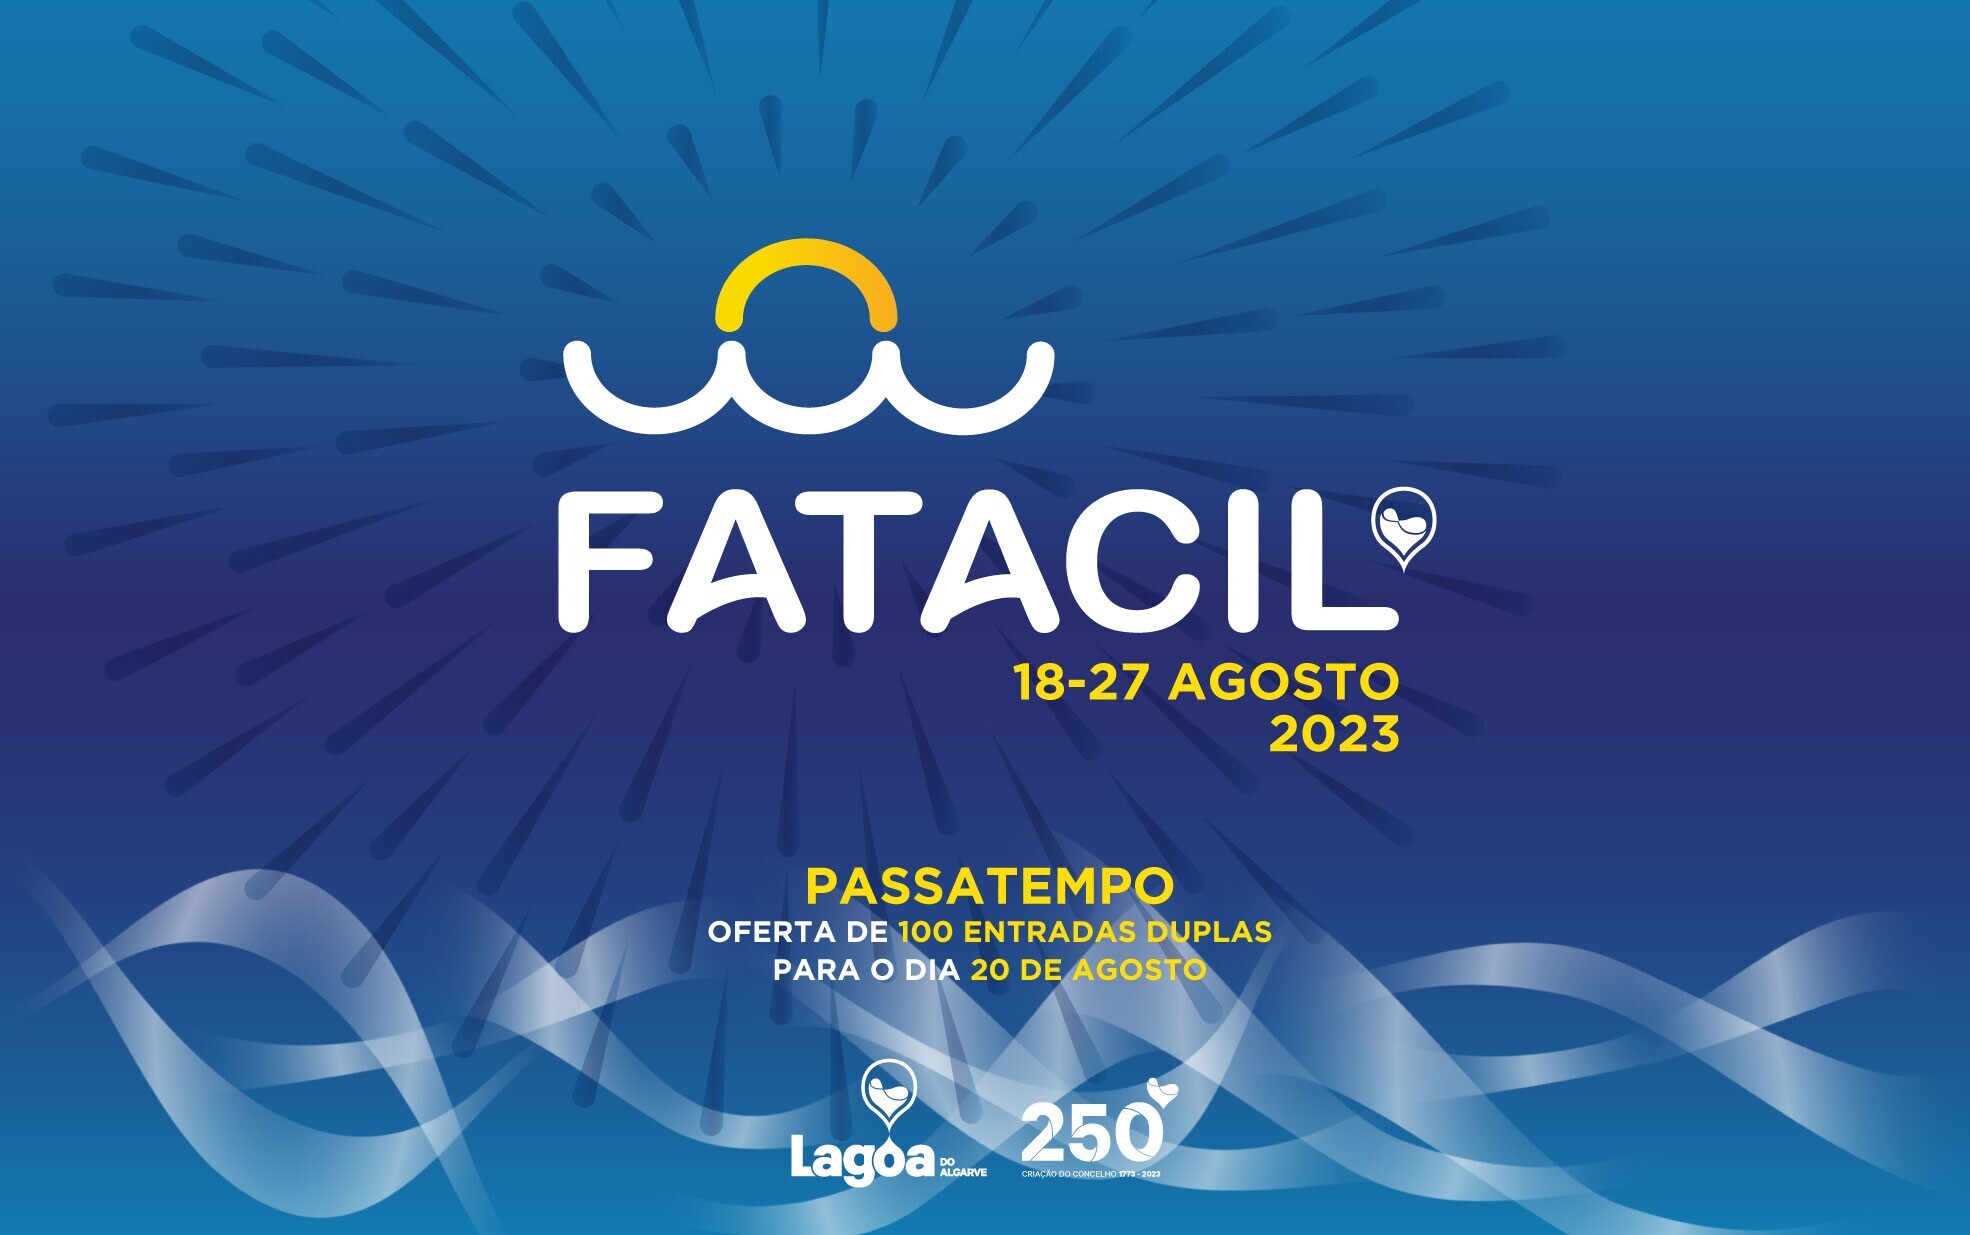 Município de Lagoa tem 100 entradas duplas para o dia 20 de Agosto na Fatacil